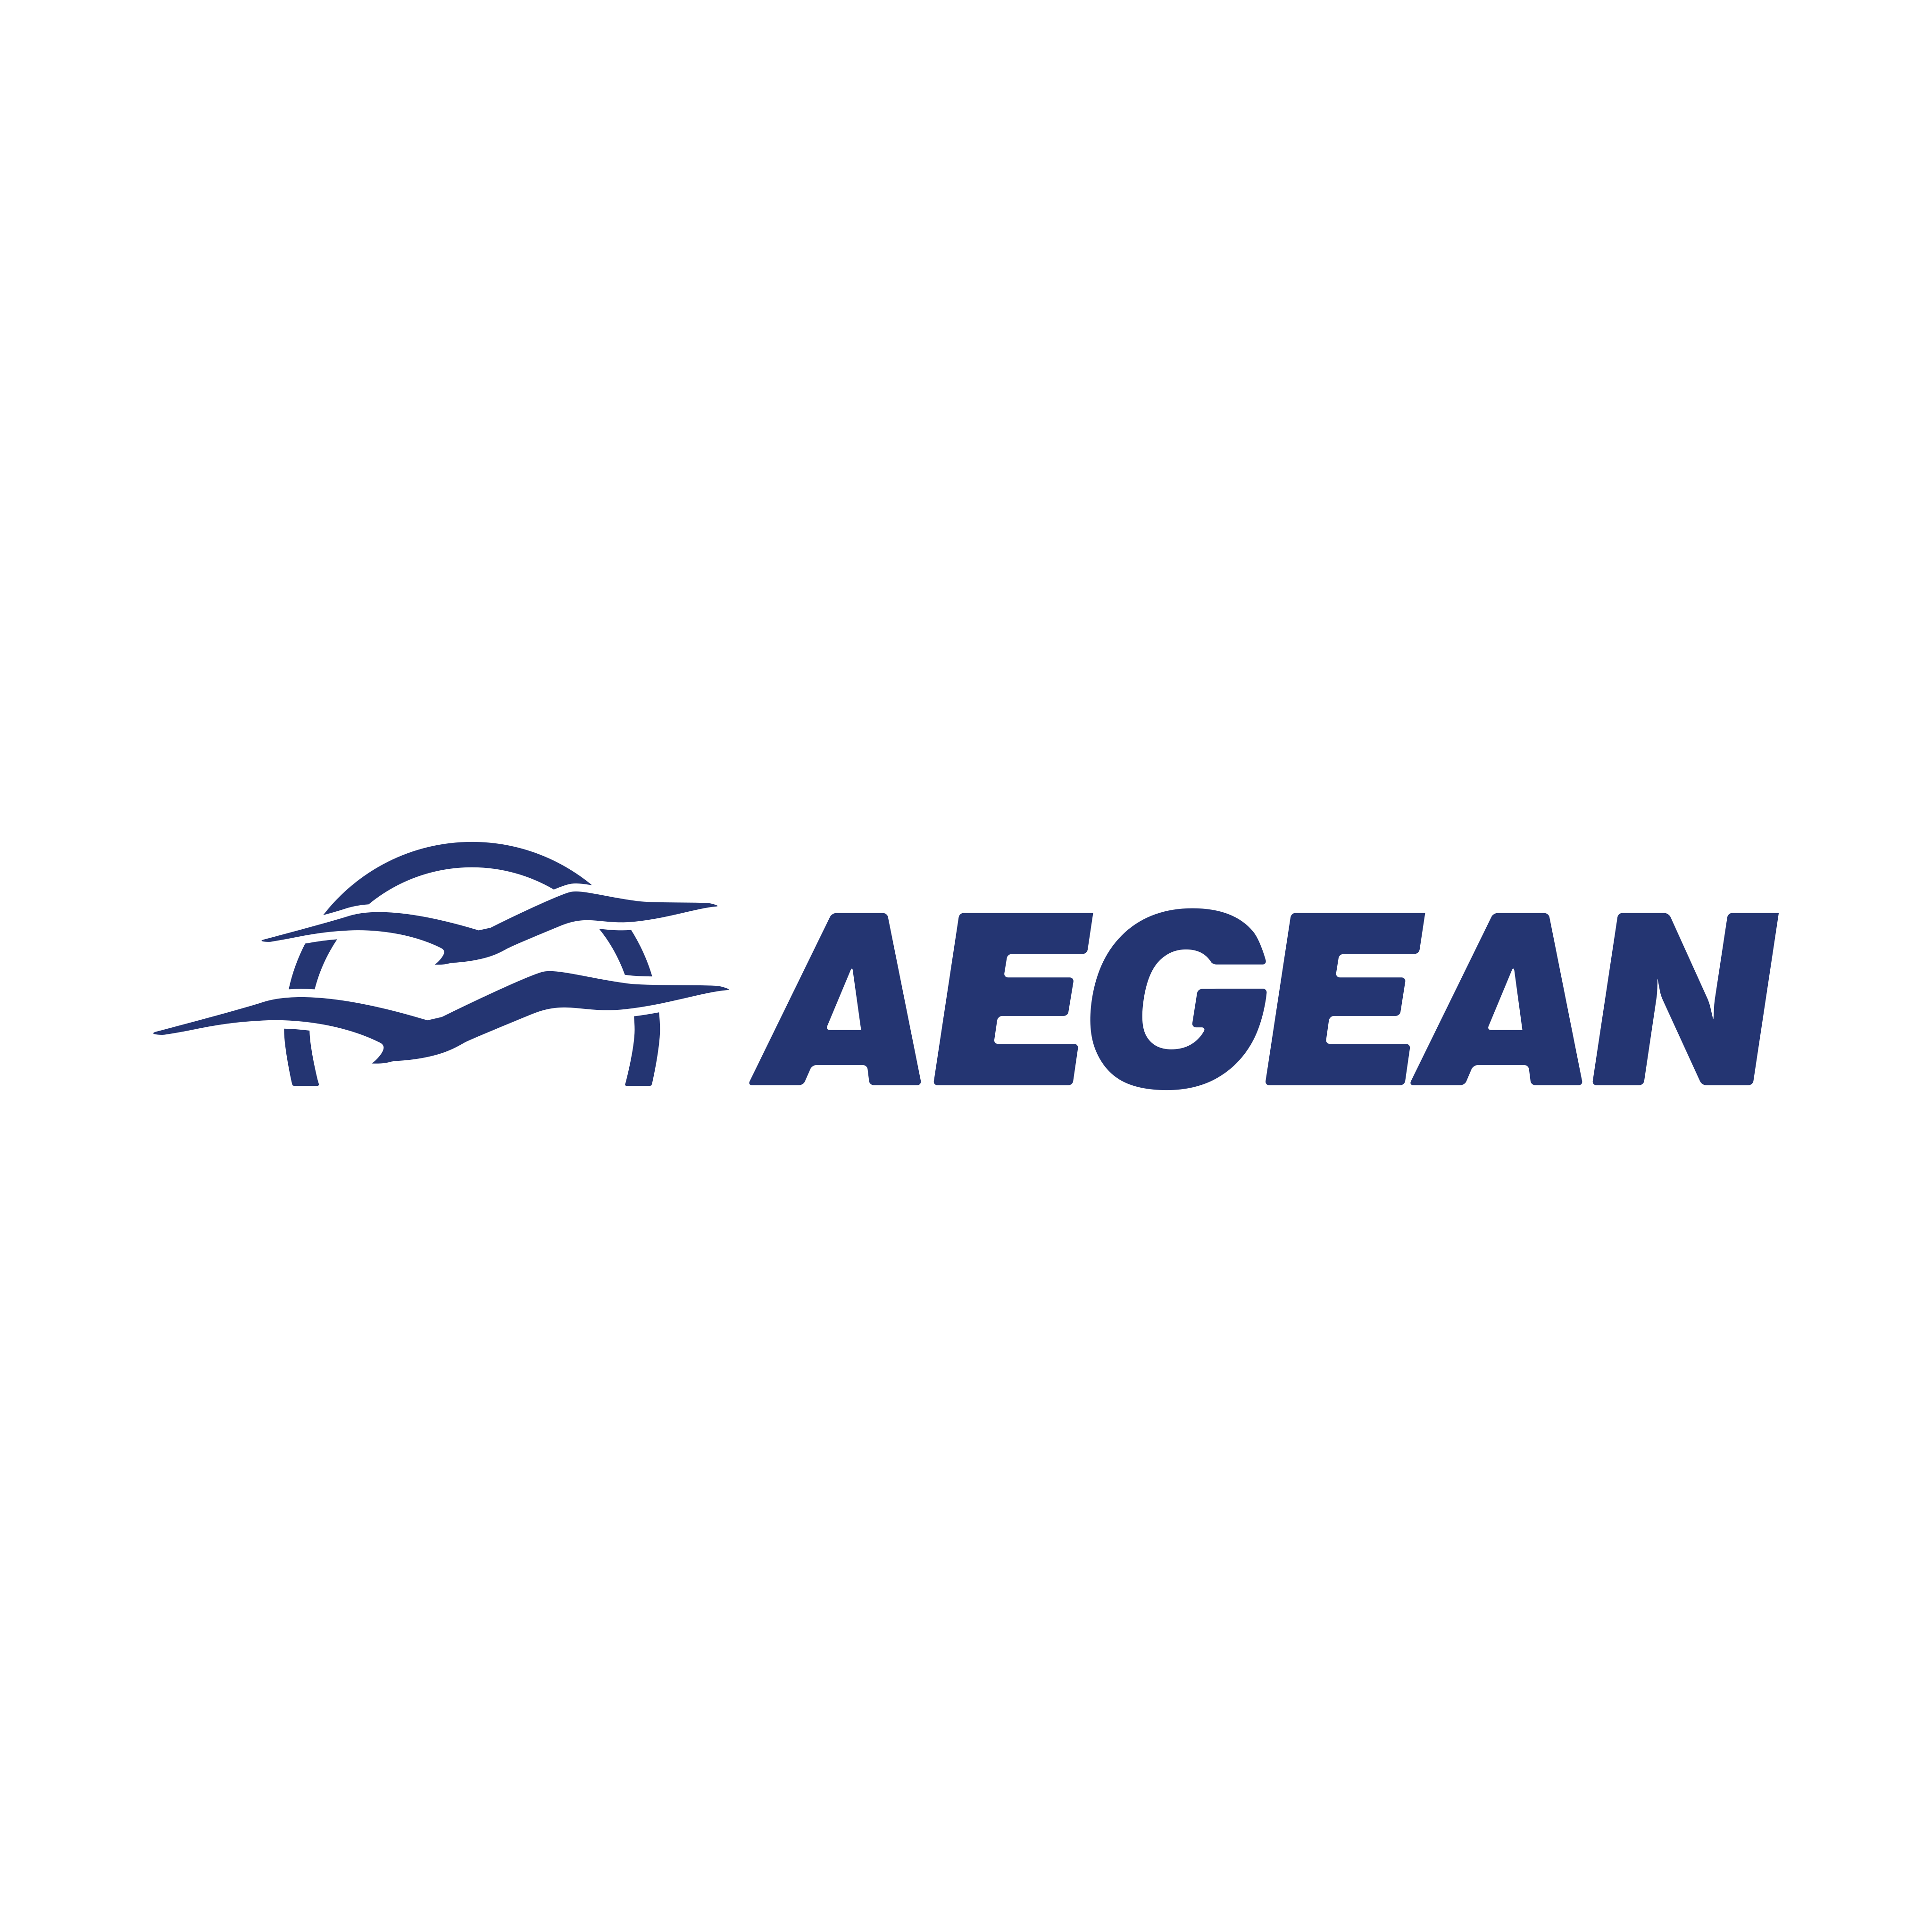 aegean logo 0 - Aegean Airlines Logo